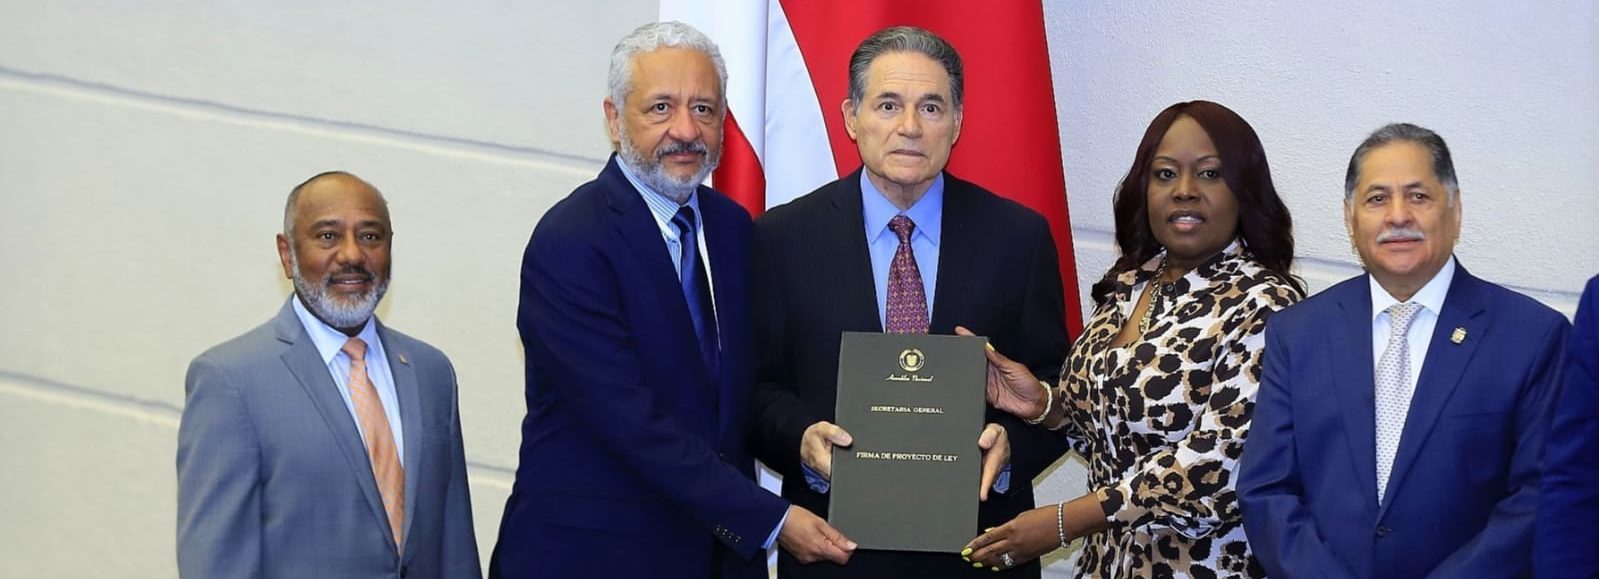 Asamblea Nacional aprueba en tercer debate presupuesto del Canal de Panamá